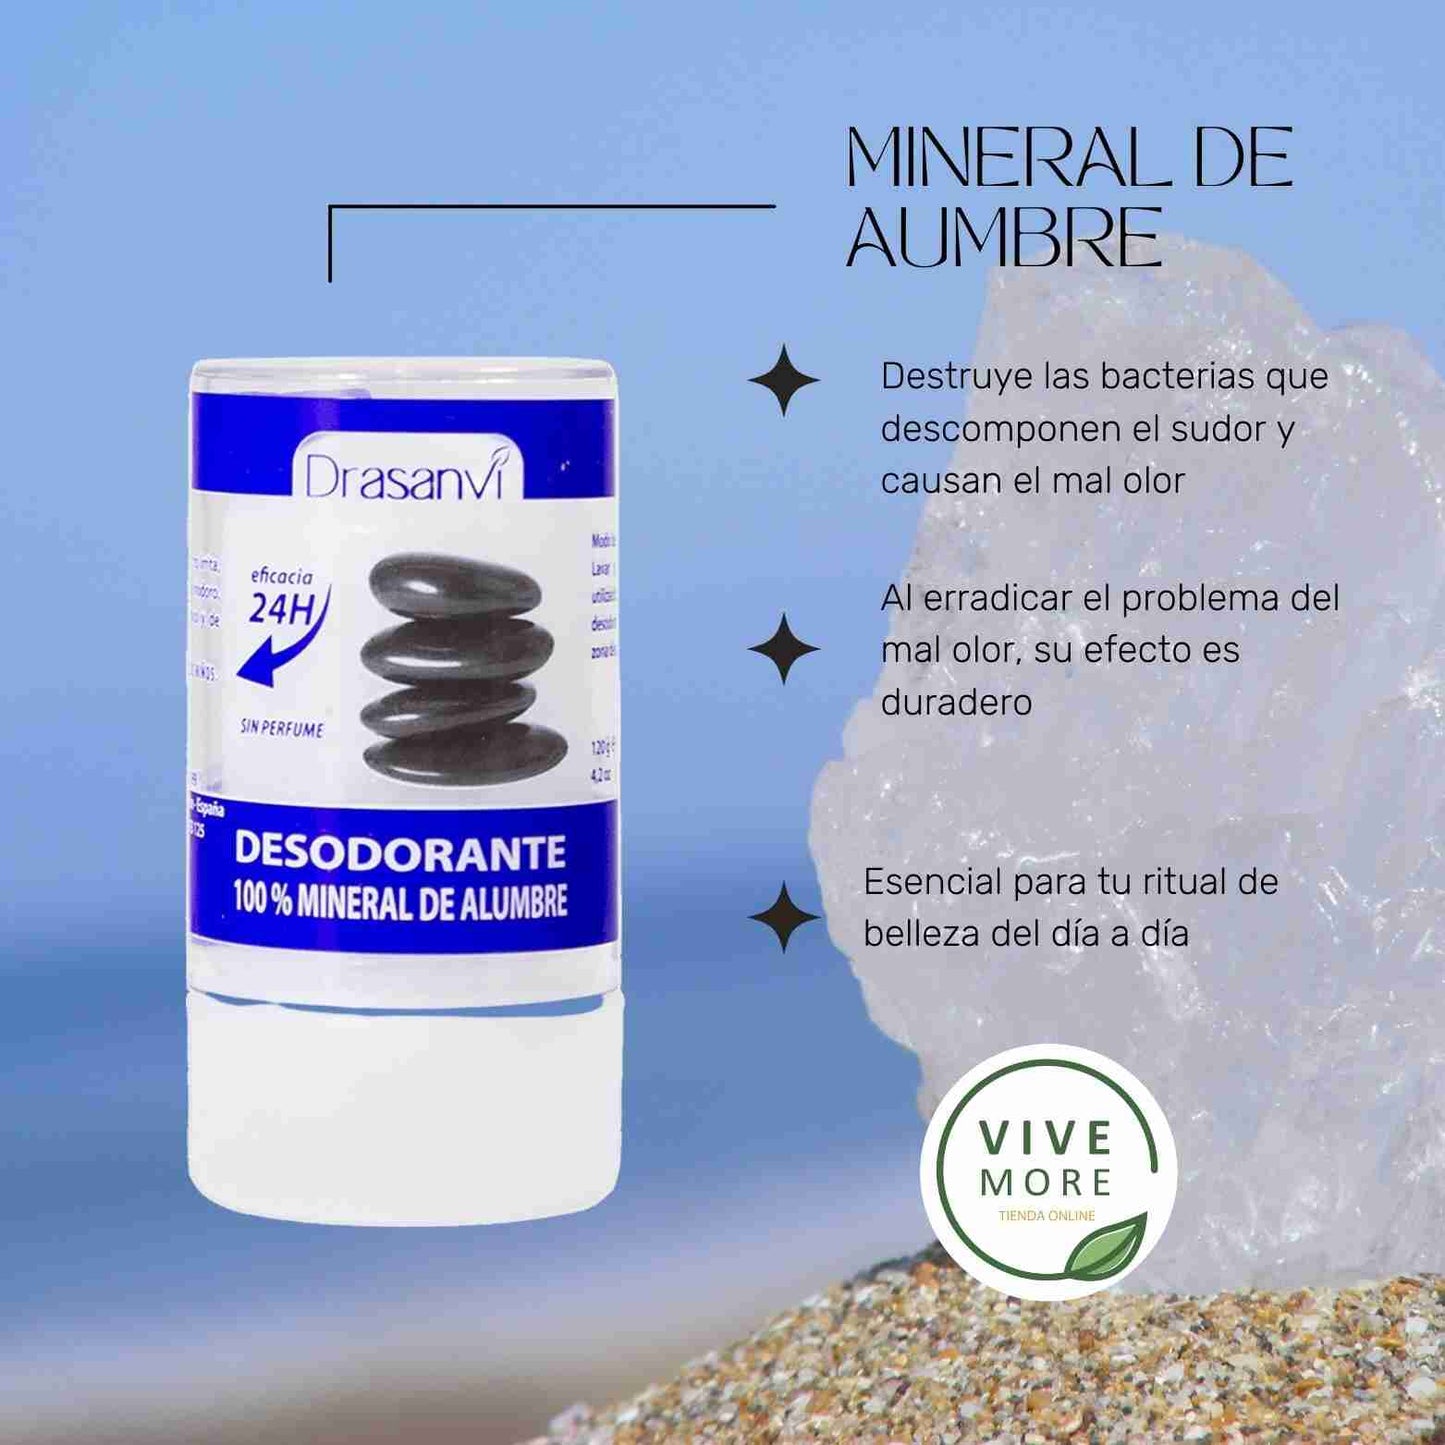 Desodorante Mineral de Alumbre 120gr - Drasanvi